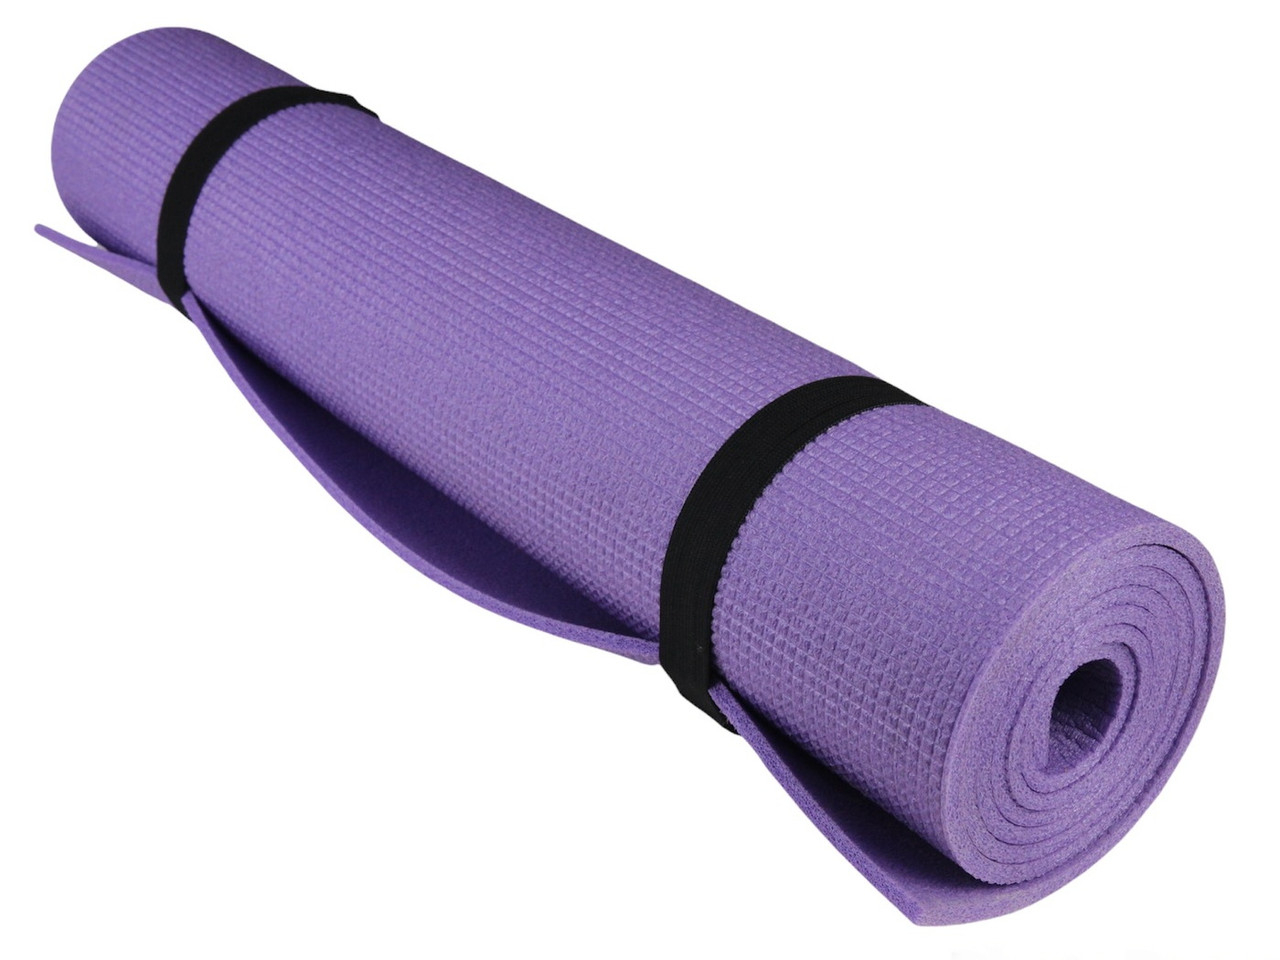 Коврик для фитнеса и йоги AEROBICA 5, фиолетовый, рулонный, толщина 5мм, ширина 120см детальная фотка